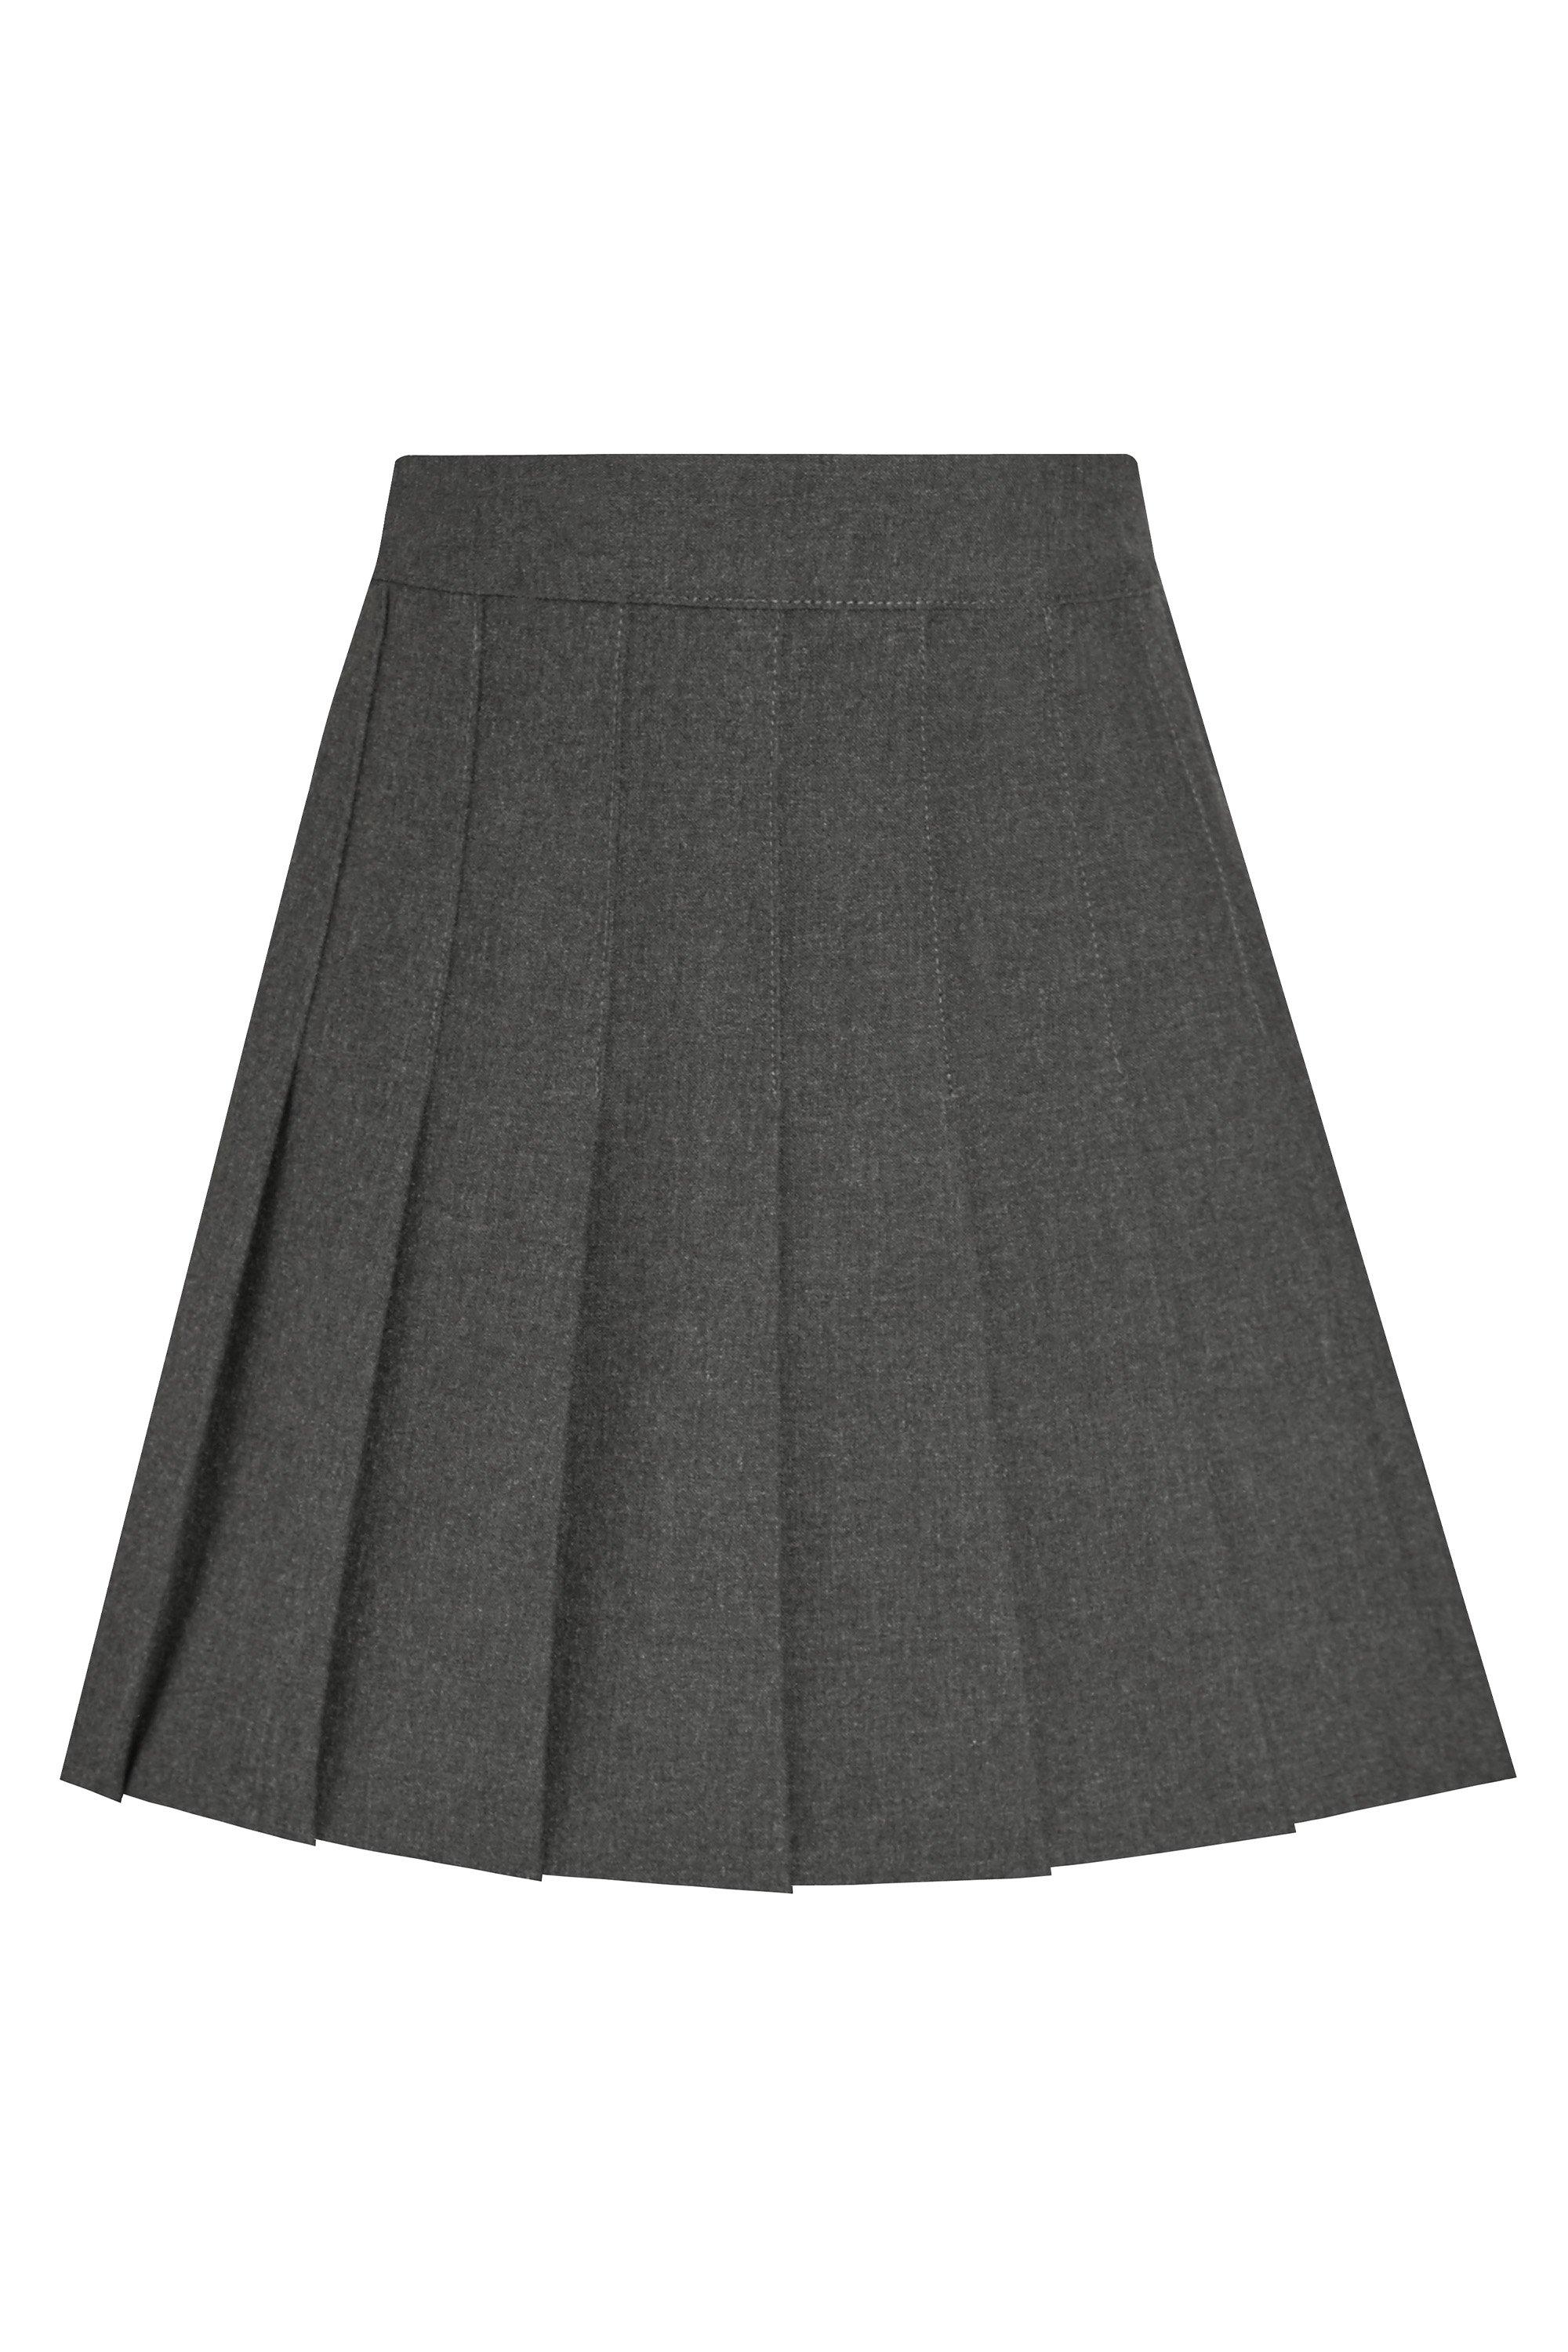 Плиссированная школьная юбка David Luke, серый